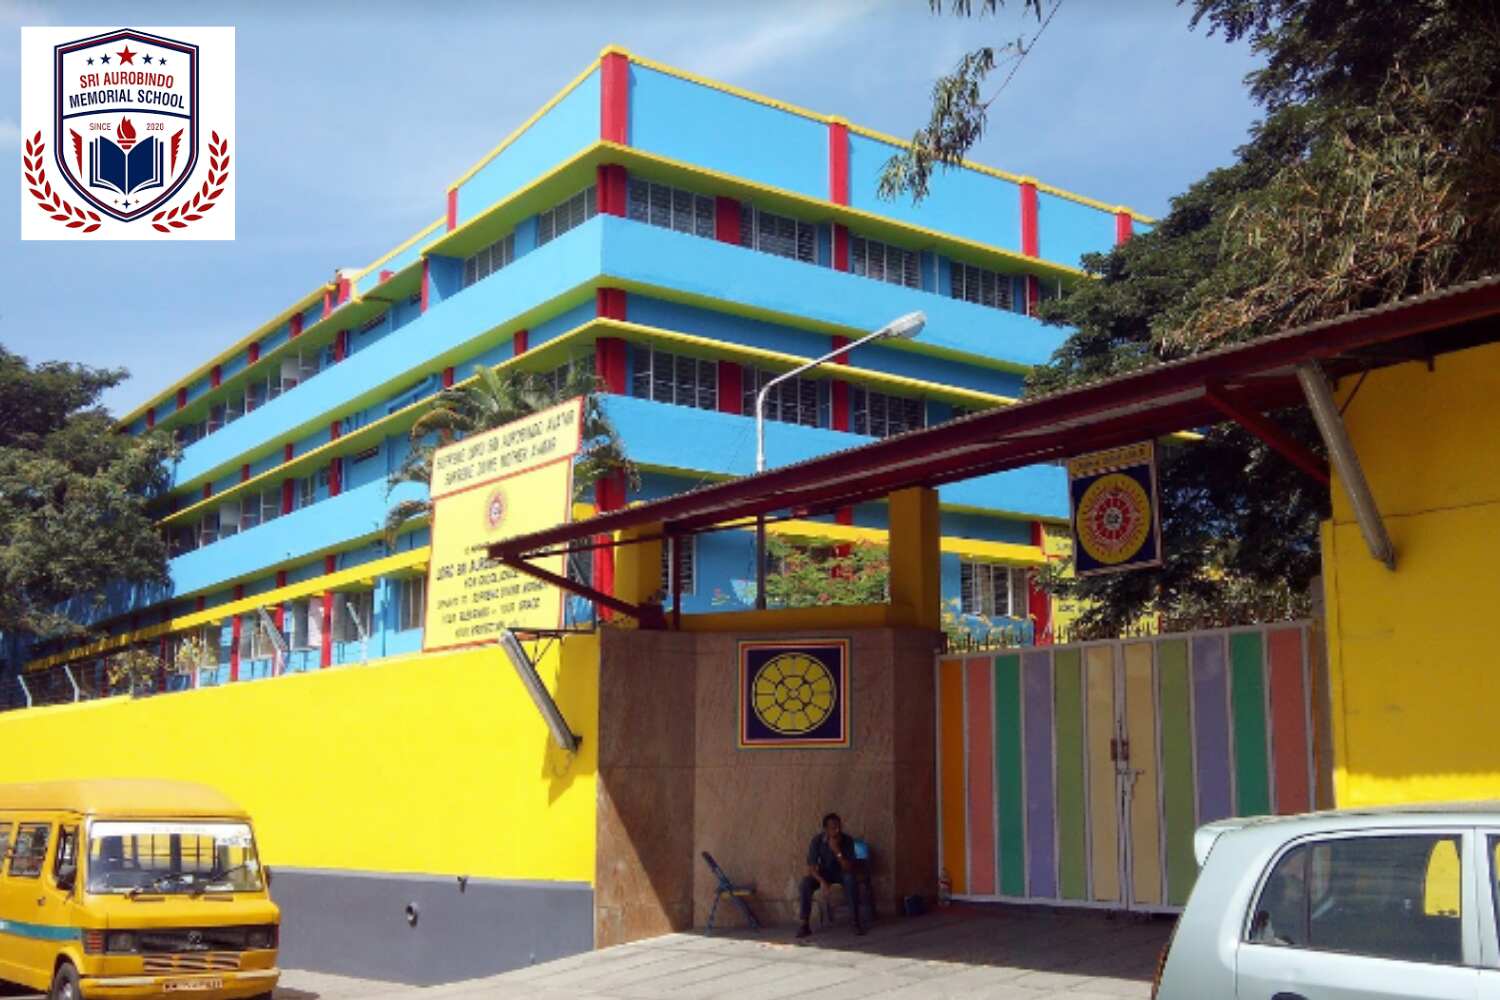 Sri Aurobindo Memorial School